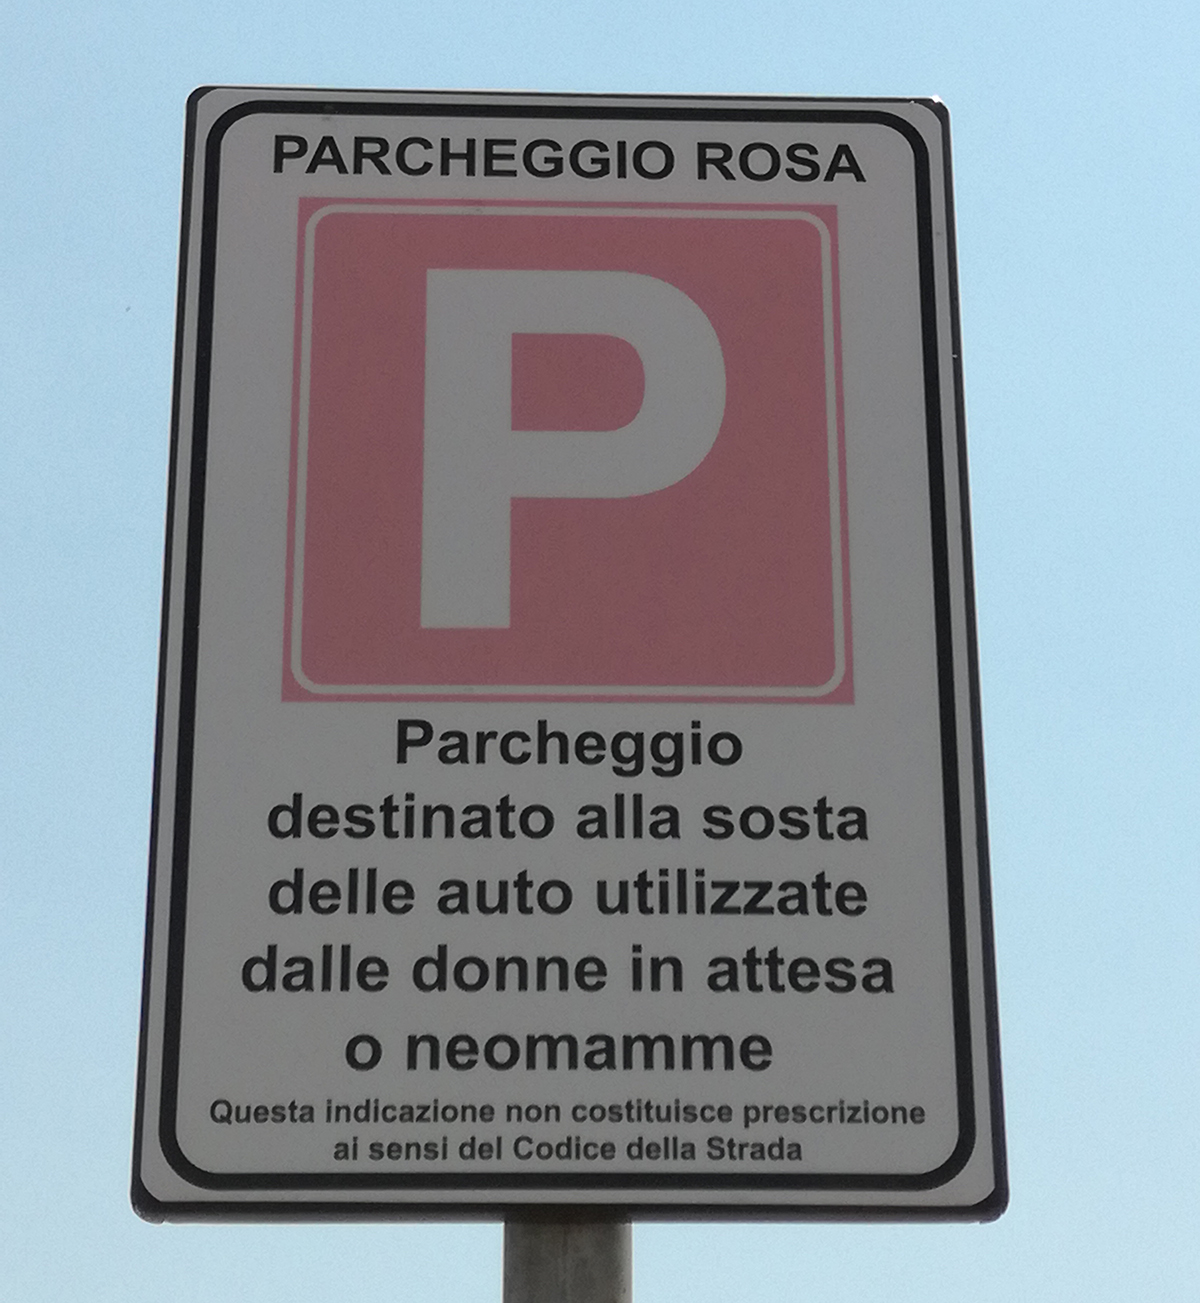 Il cartello che troverete in tutti i parcheggi rosa del Porto Civitavecchia